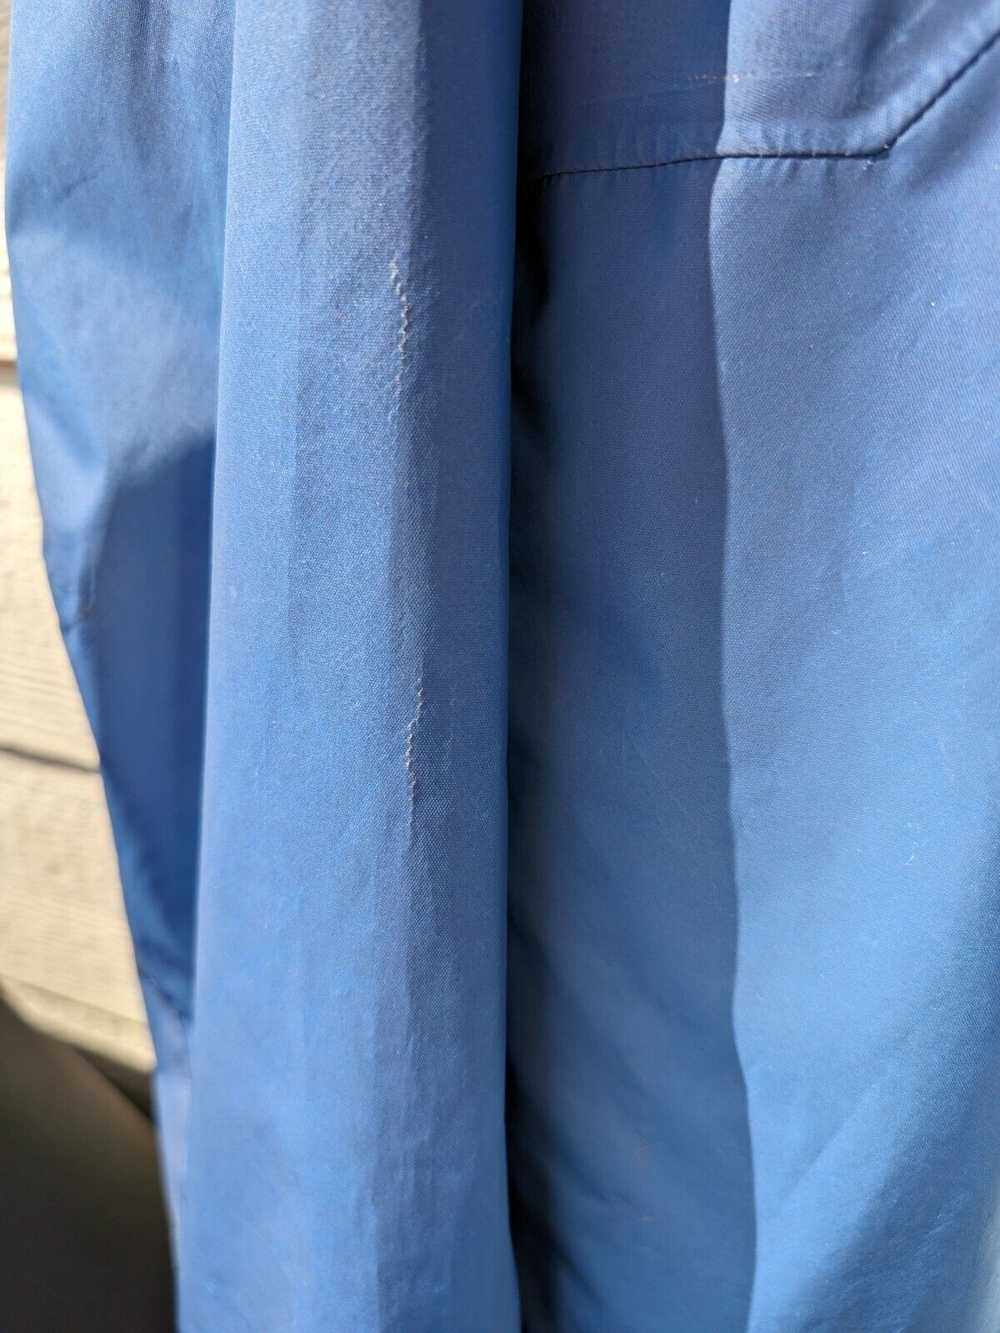 Other Vollebak Jacket Blue Morpho Size L, Rare - image 8